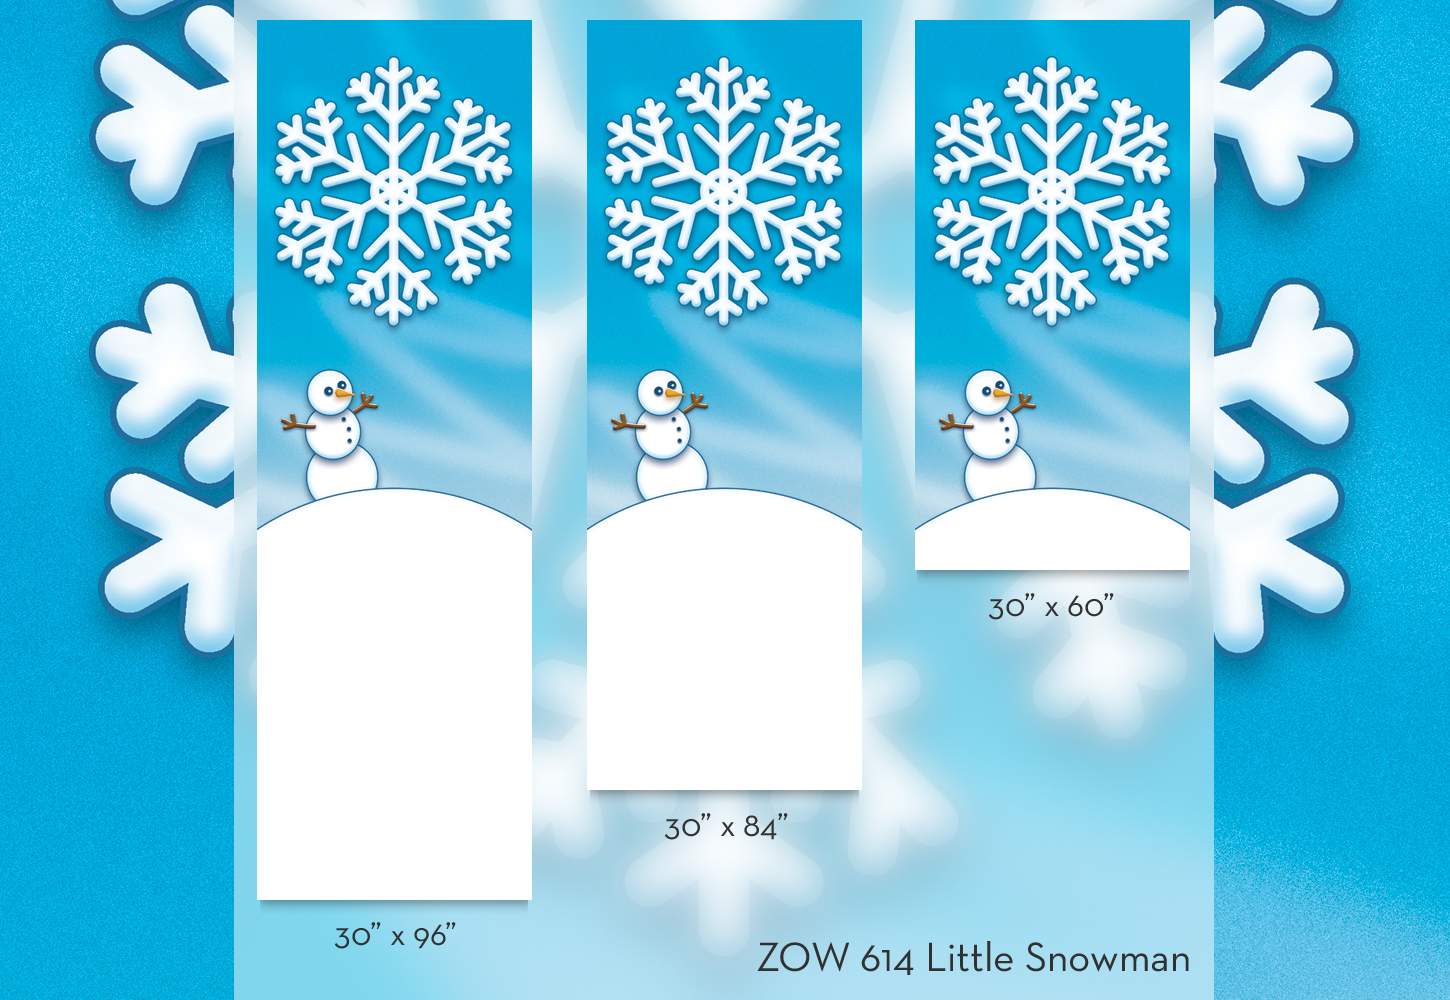 ZOW 614 Little Snowman